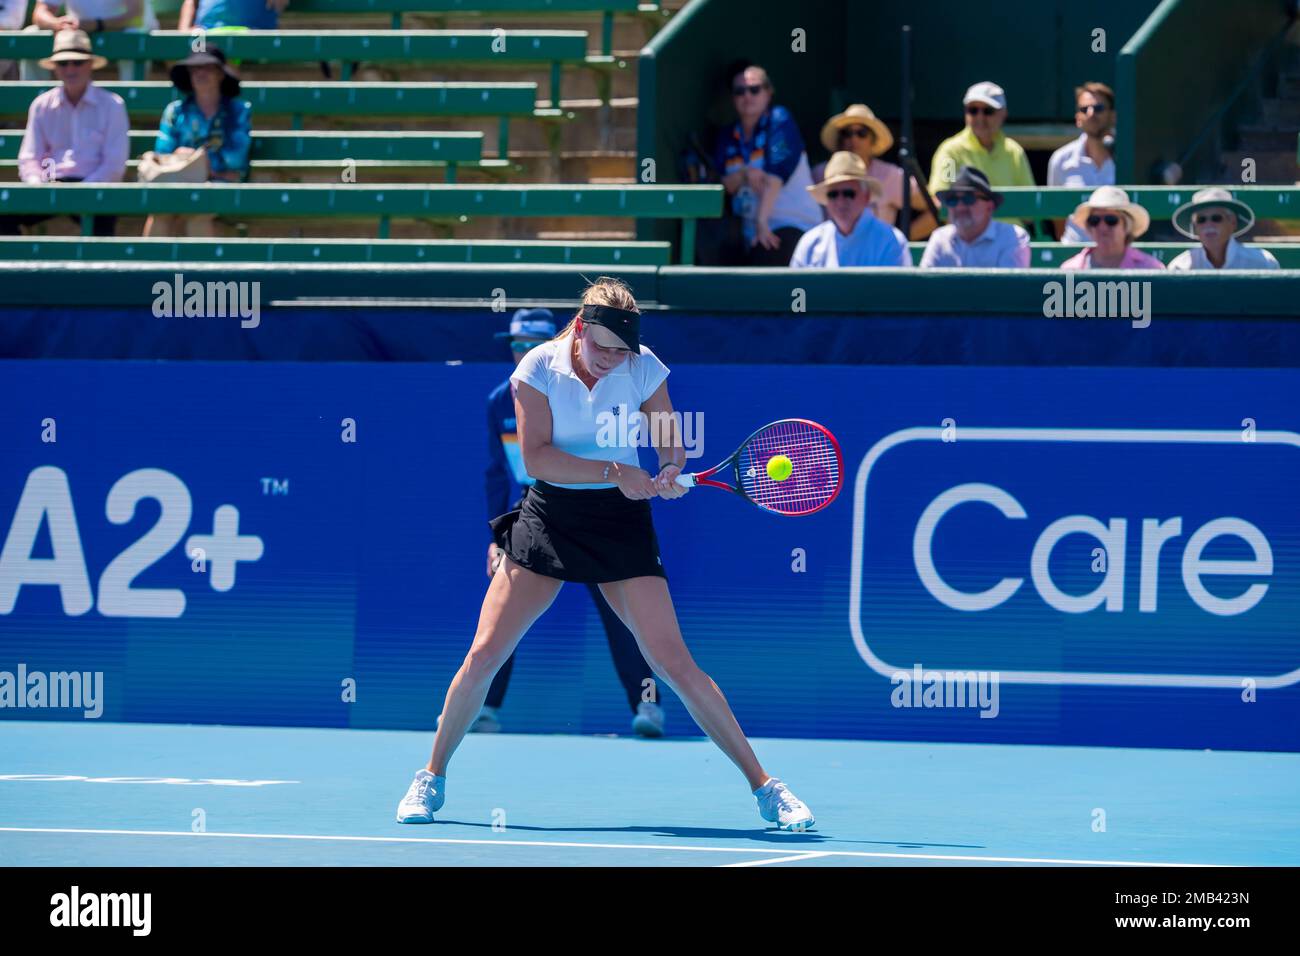 Donna Vekic de Croatie en action pendant le jour 2 du tournoi de tennis classique de Kooyong dernier match contre Kimberly Birrell de l'Australie au club de tennis de Kooyong Lawn. Vekic a gagné en trois séries 2:6, 6:2, 10:8. Banque D'Images